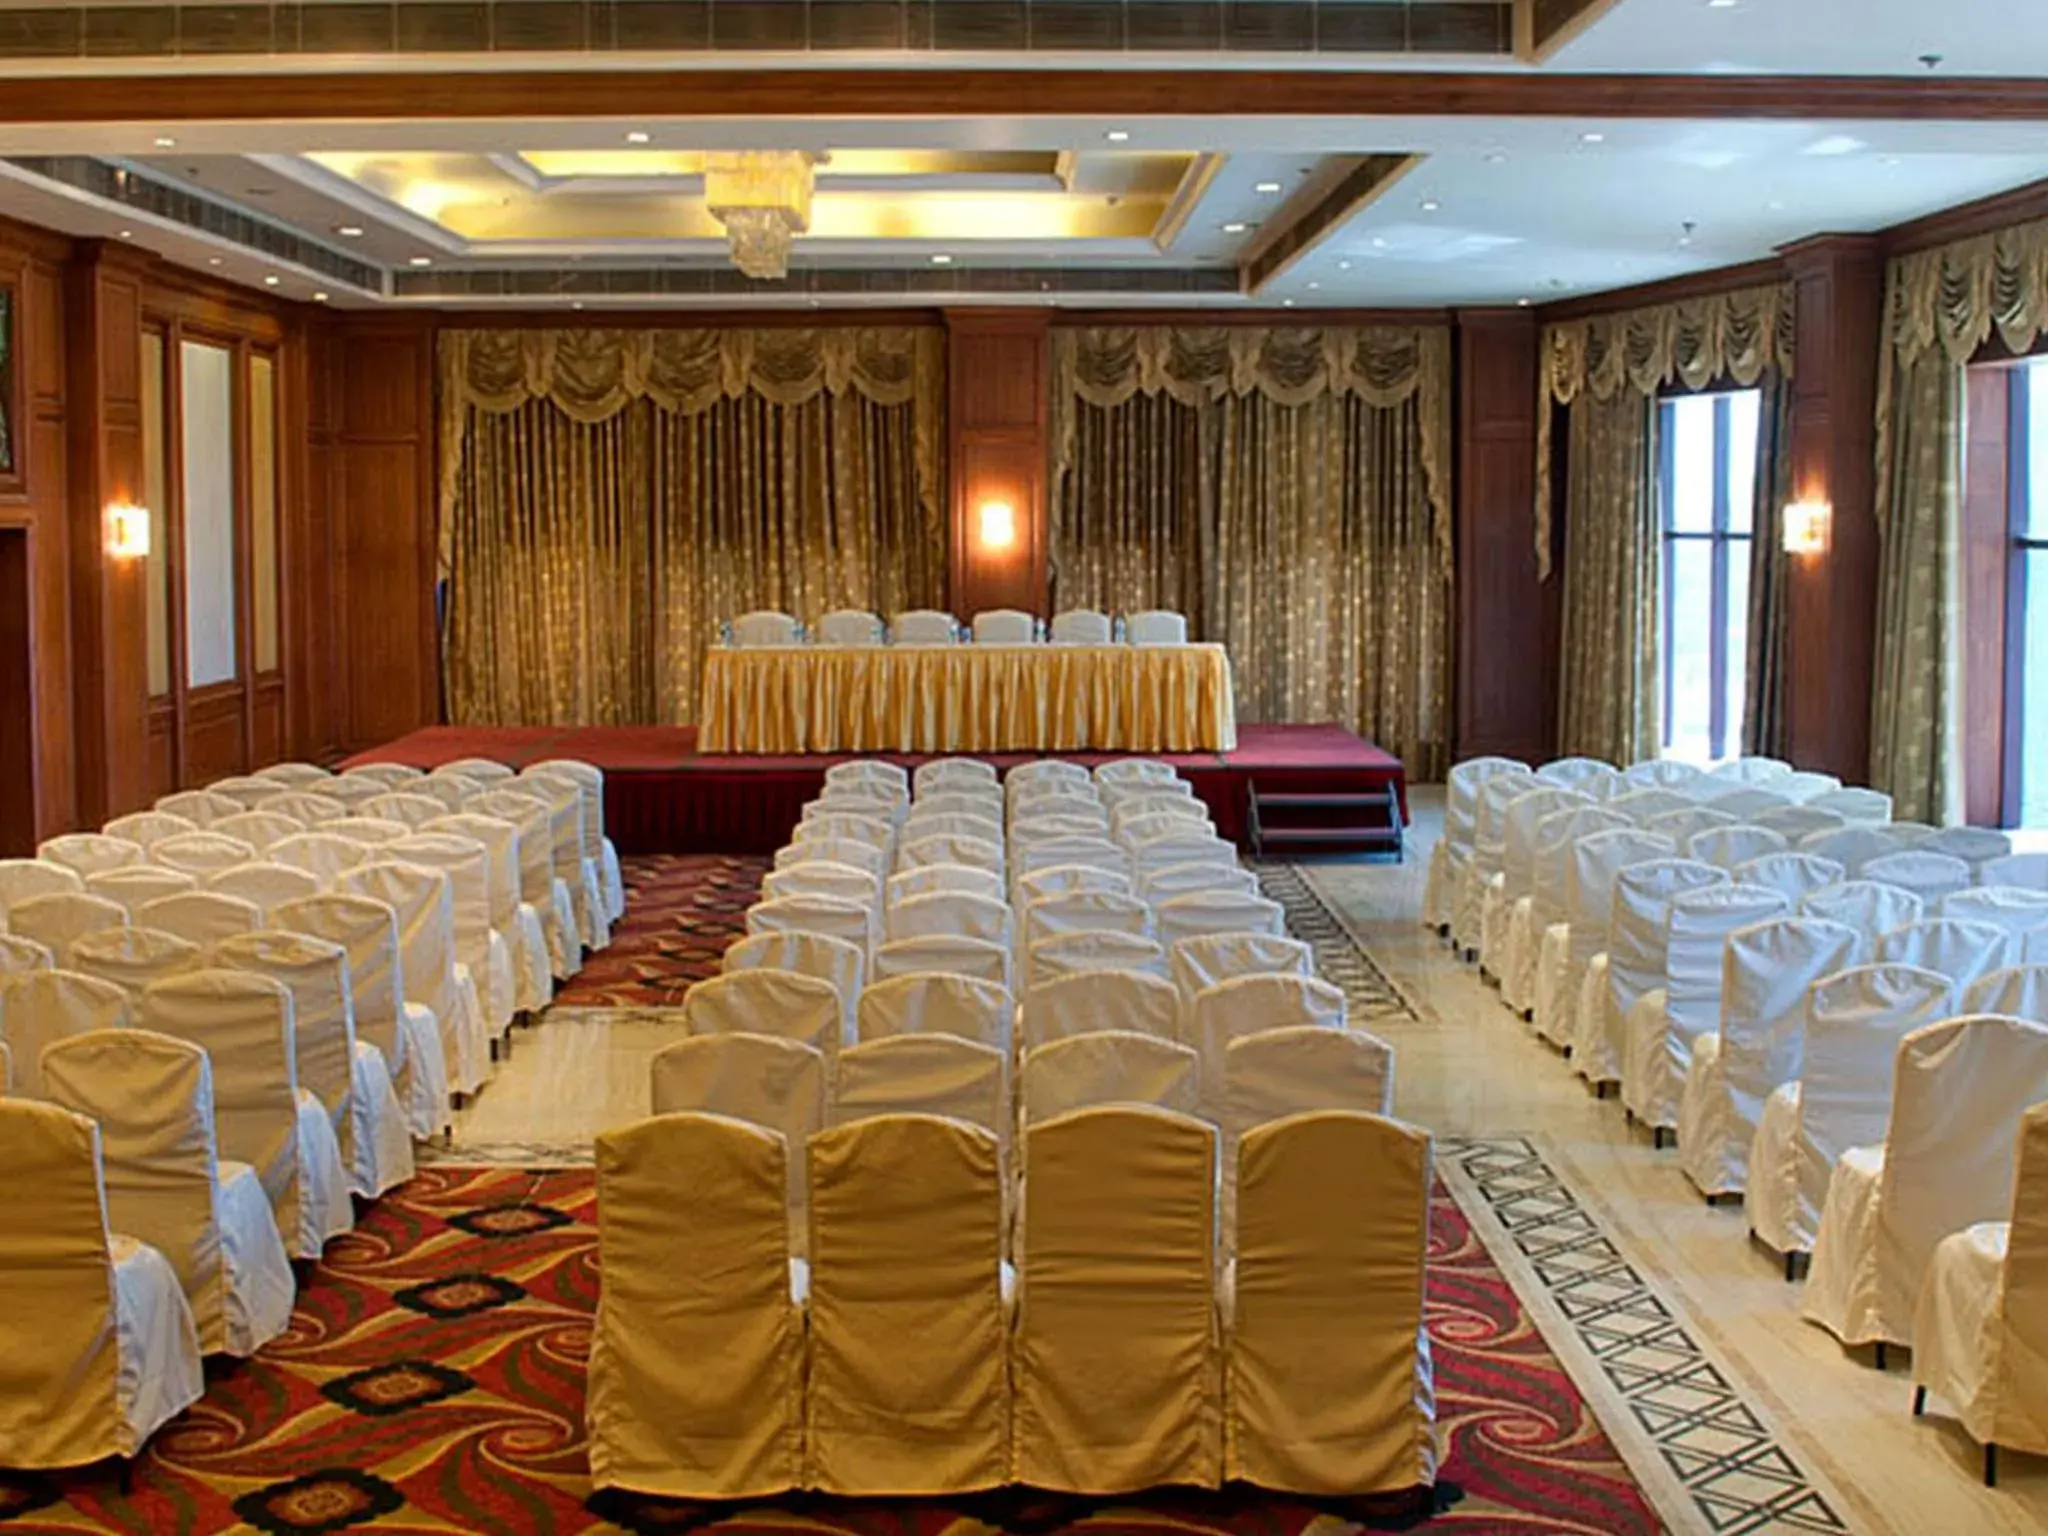 Meeting/conference room, Banquet Facilities in Clarion Hotel Bella Casa